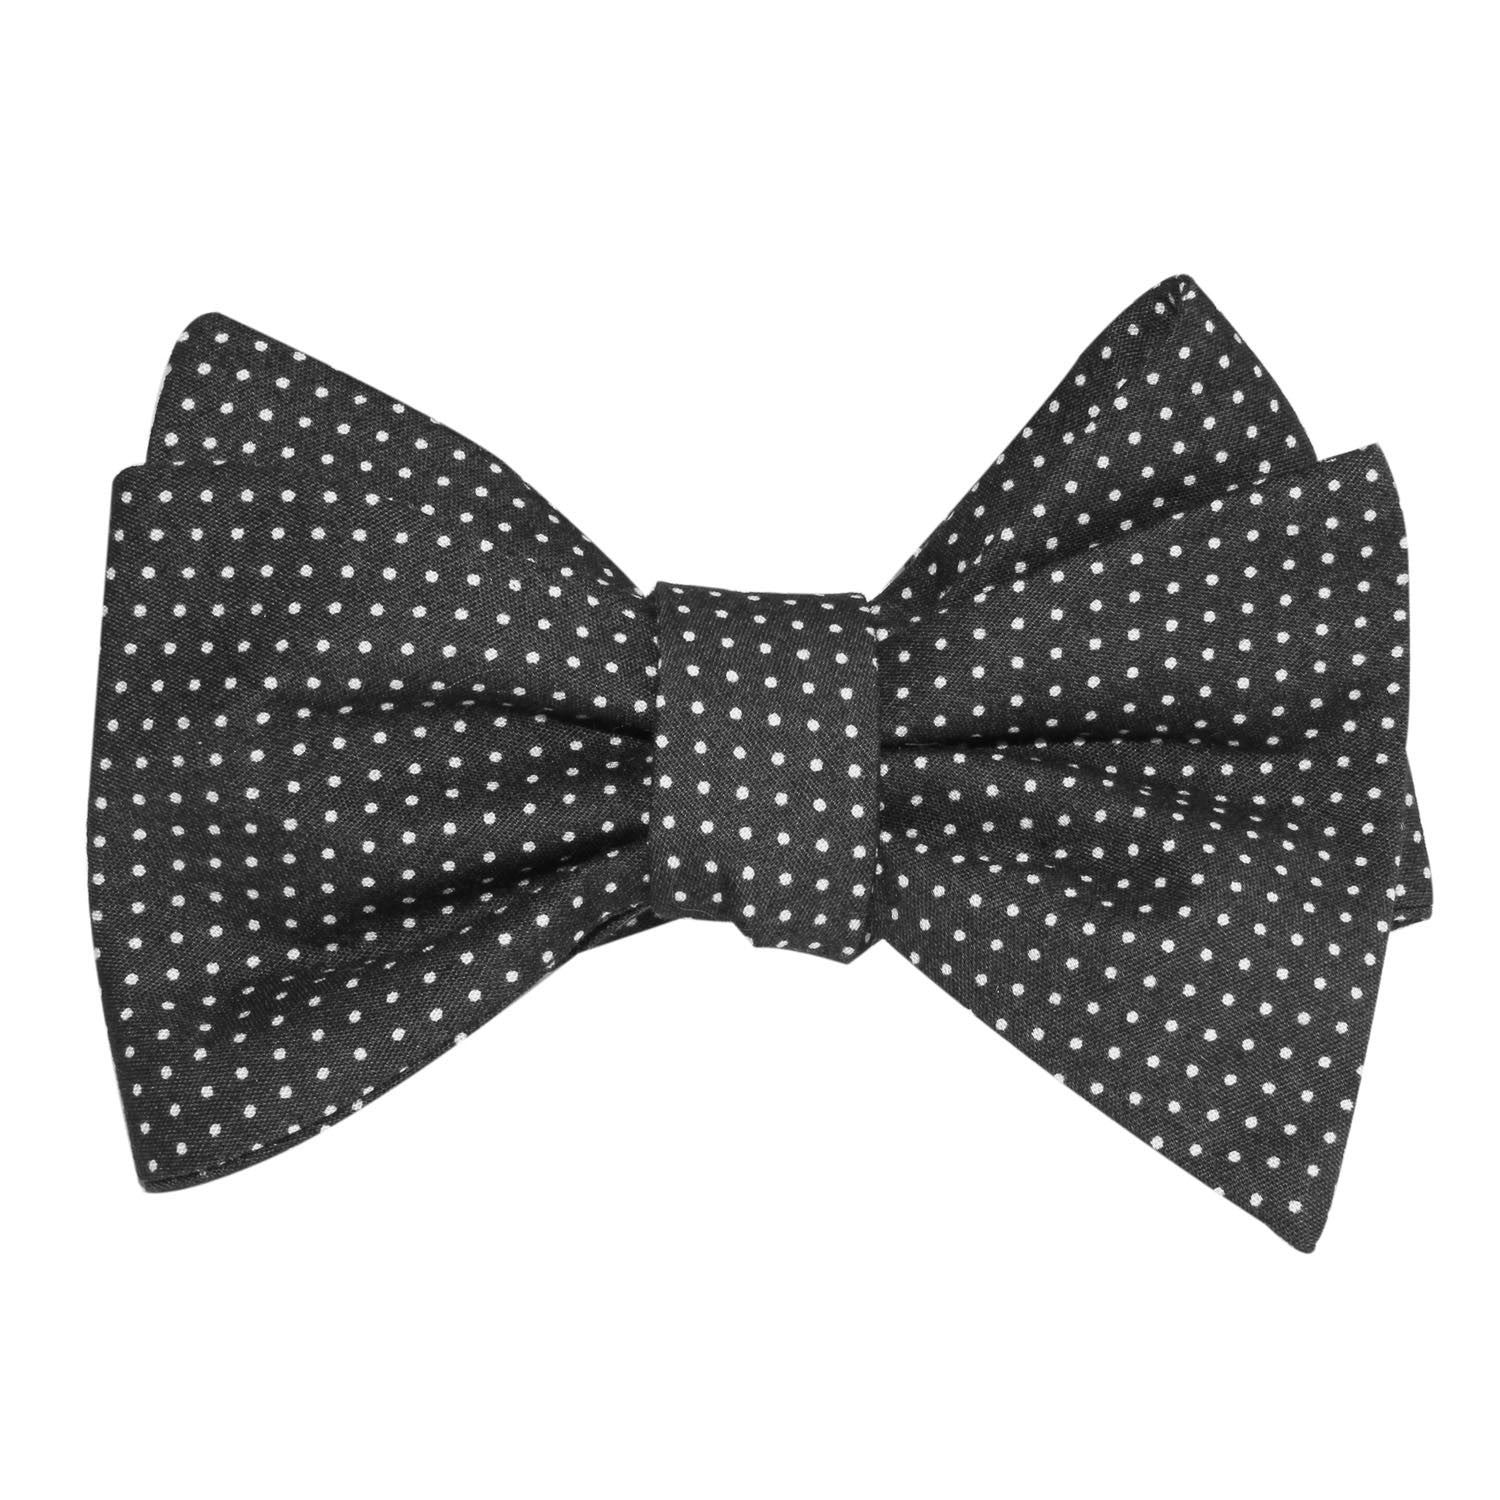 Black Cotton with White Mini Polka Dots Self Tie Bow Tie 1